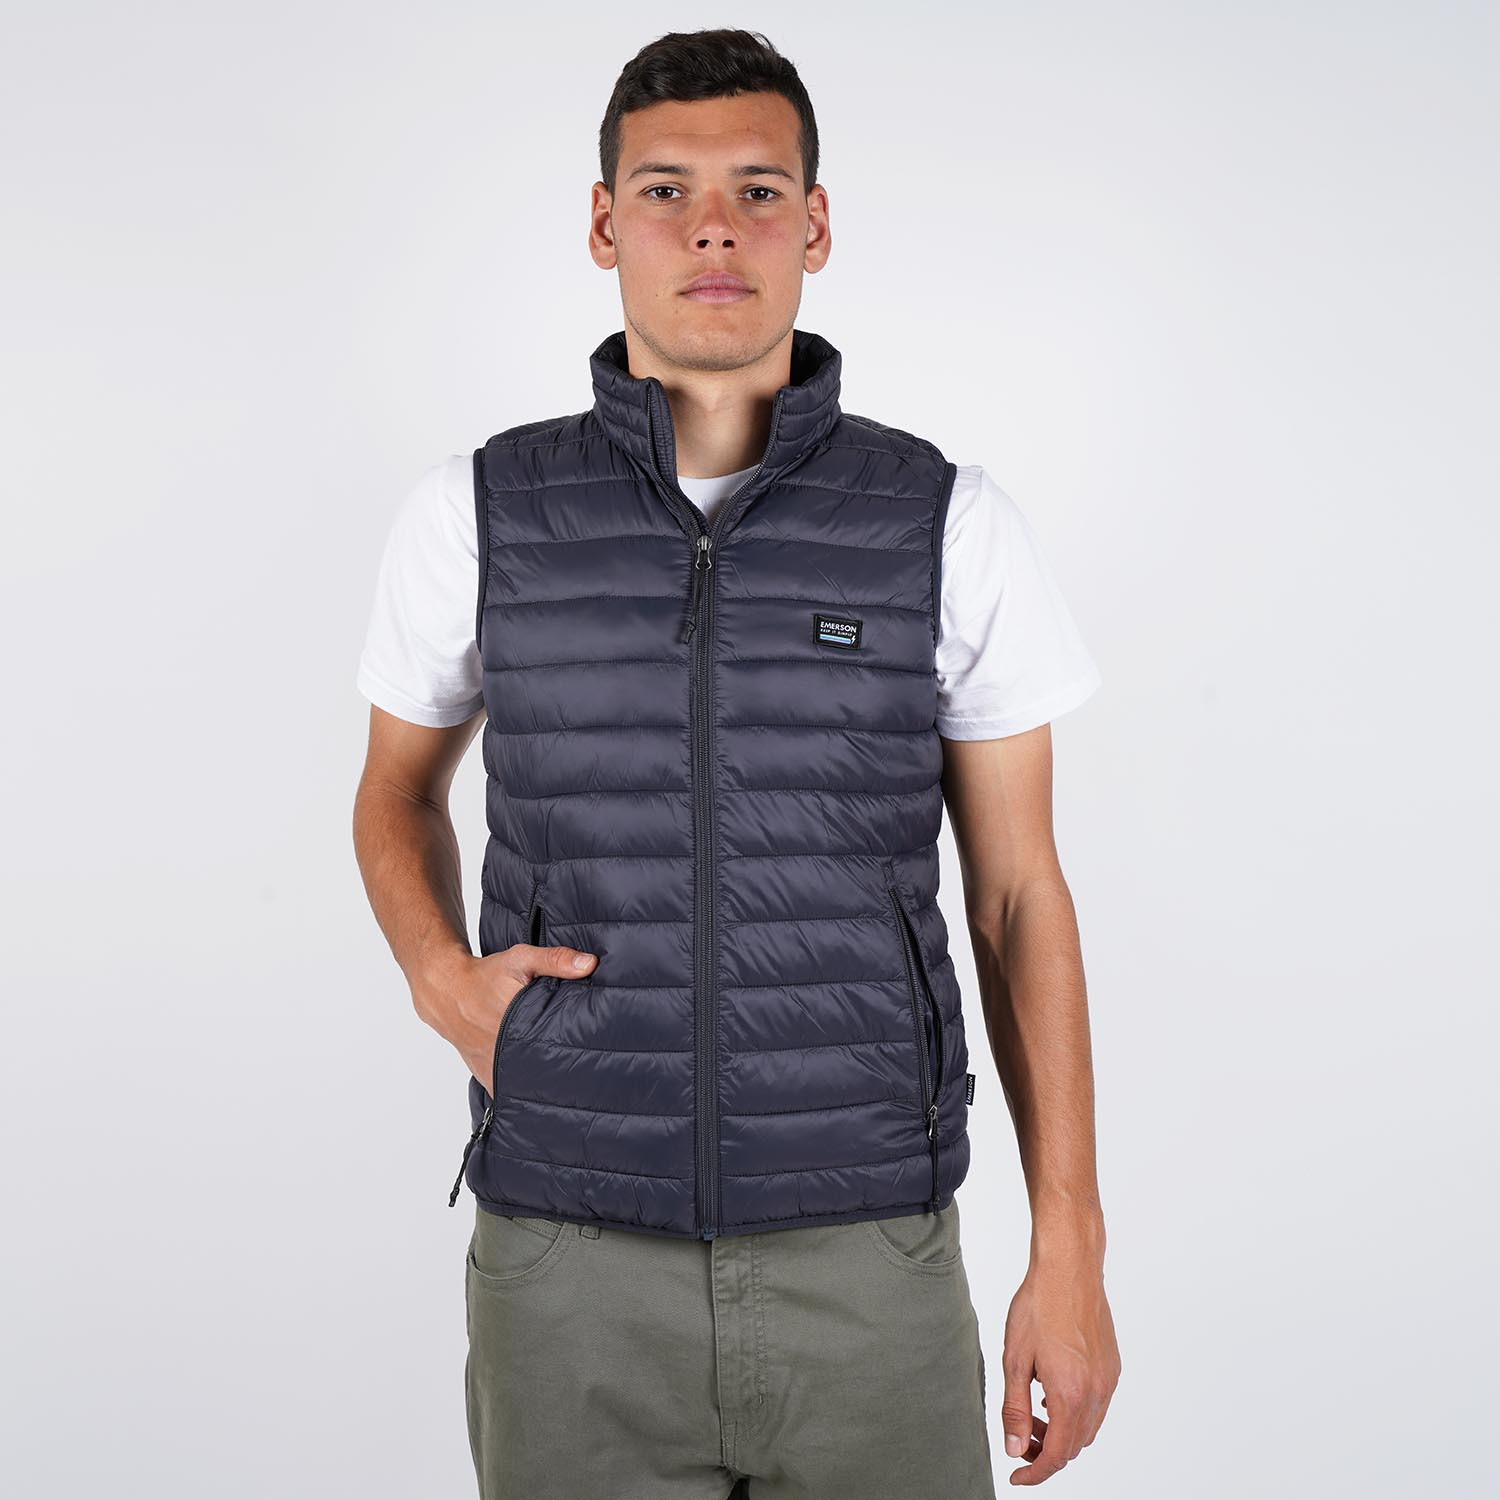 Emerson Men's Vest Jacket (9000048658_43901)